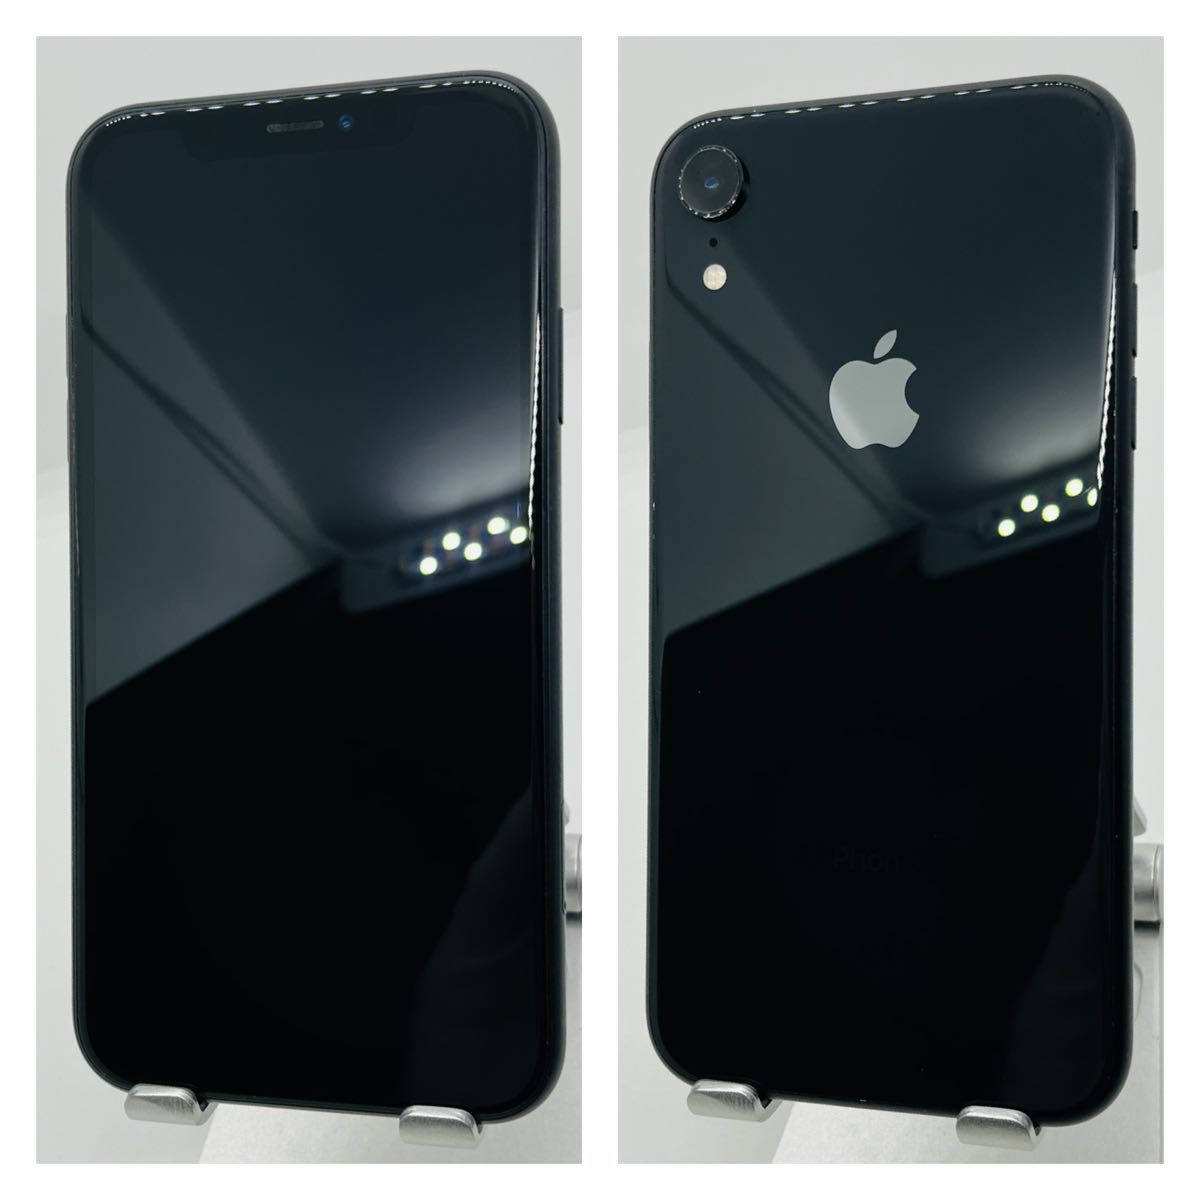 B 新品電池　iPhone XR Black 128 GB SIMフリー　本体